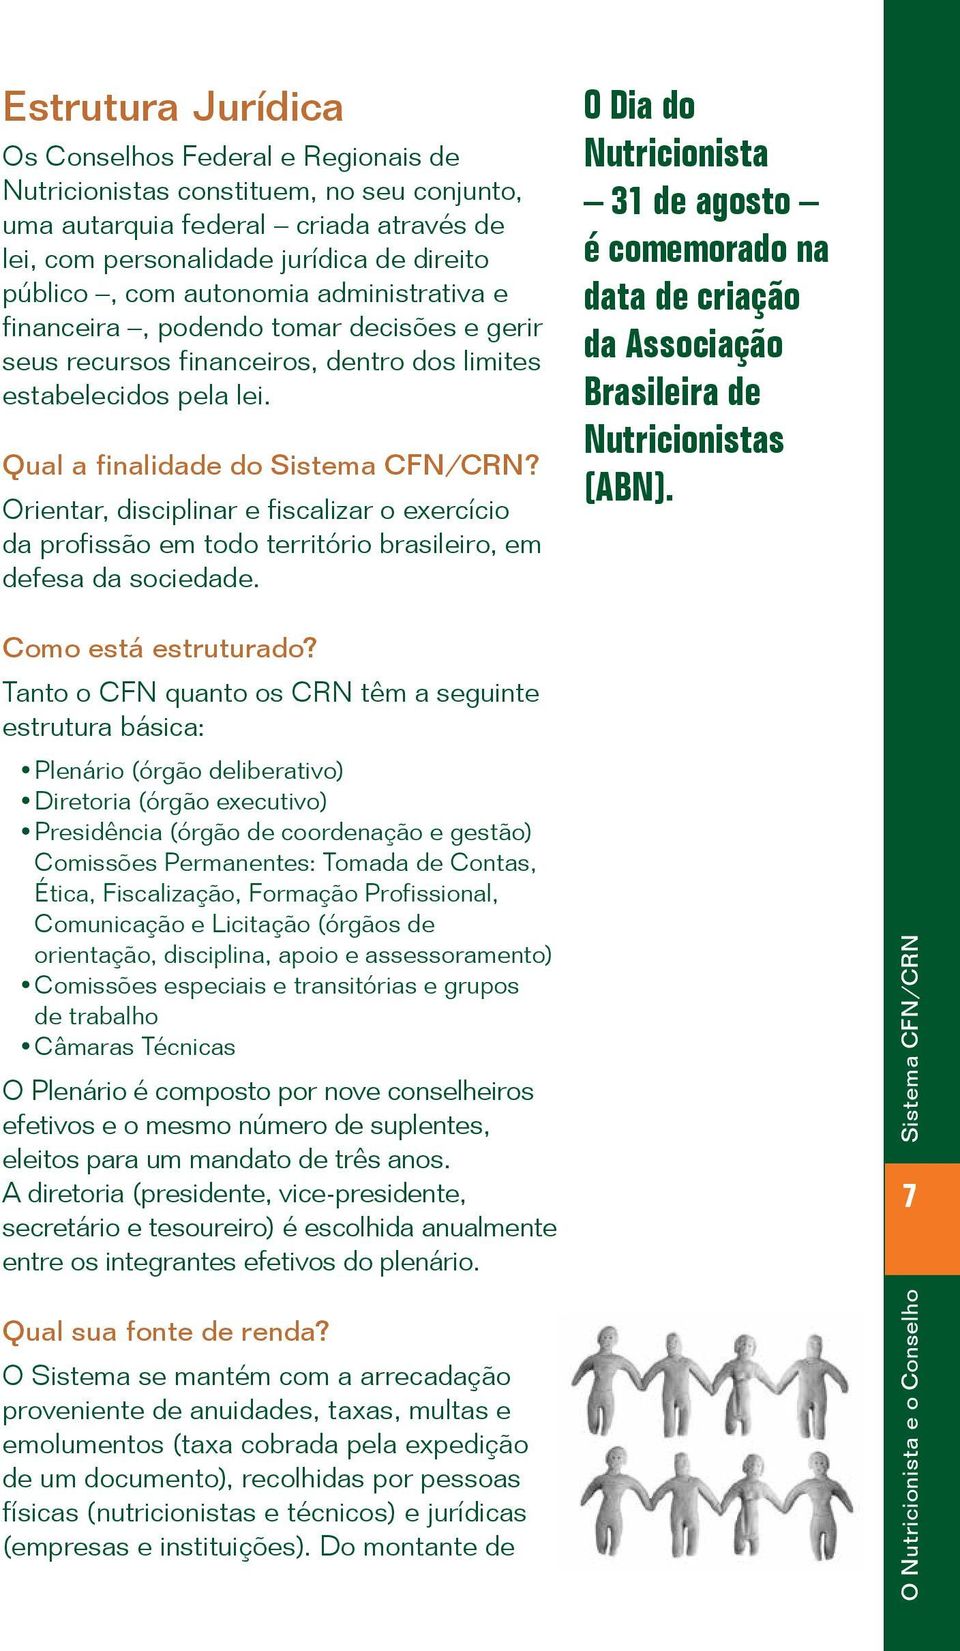 Orientar, disciplinar e fiscalizar o exercício da profissão em todo território brasileiro, em defesa da sociedade.